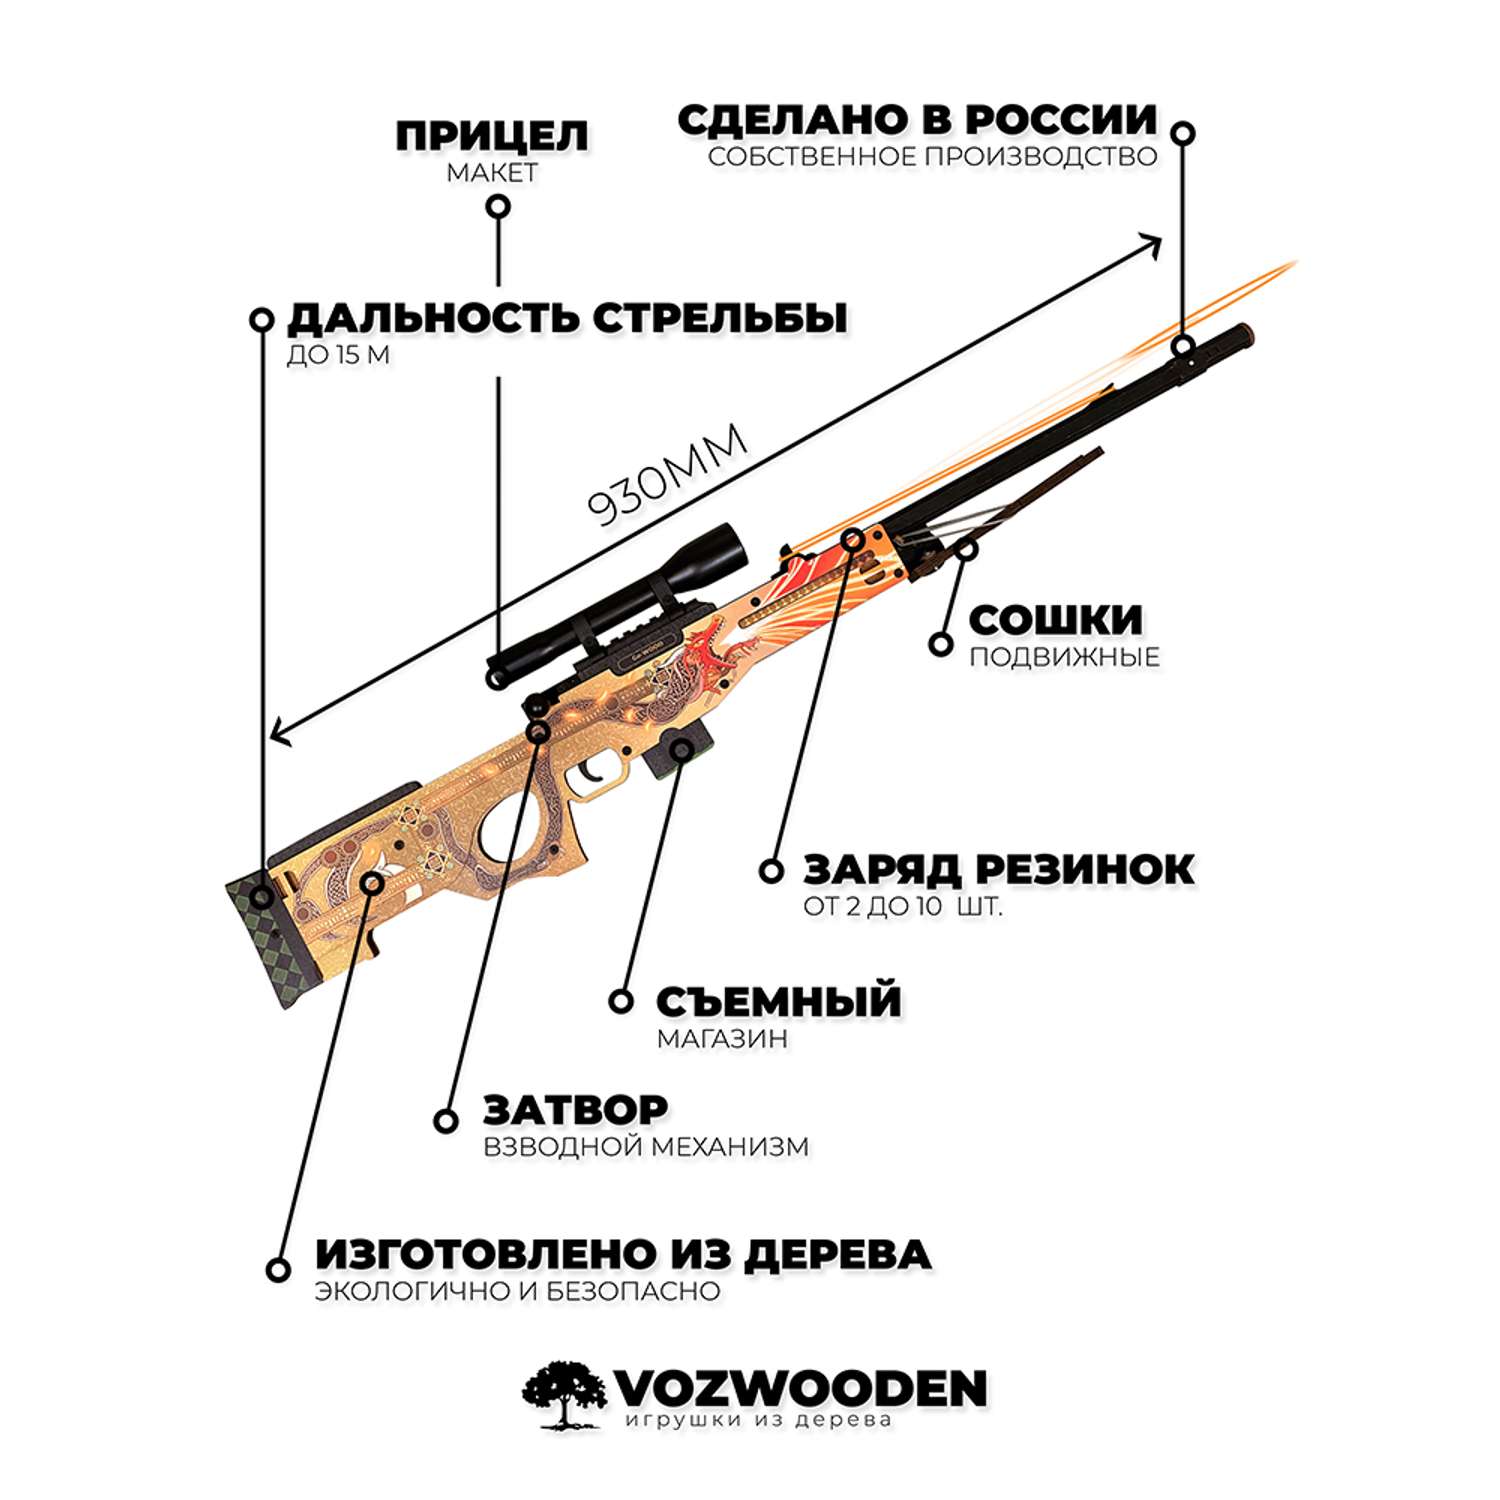 Снайперская винтовка Go-Wood AWP версия 1.6 История о драконе деревянный резинкострел - фото 2